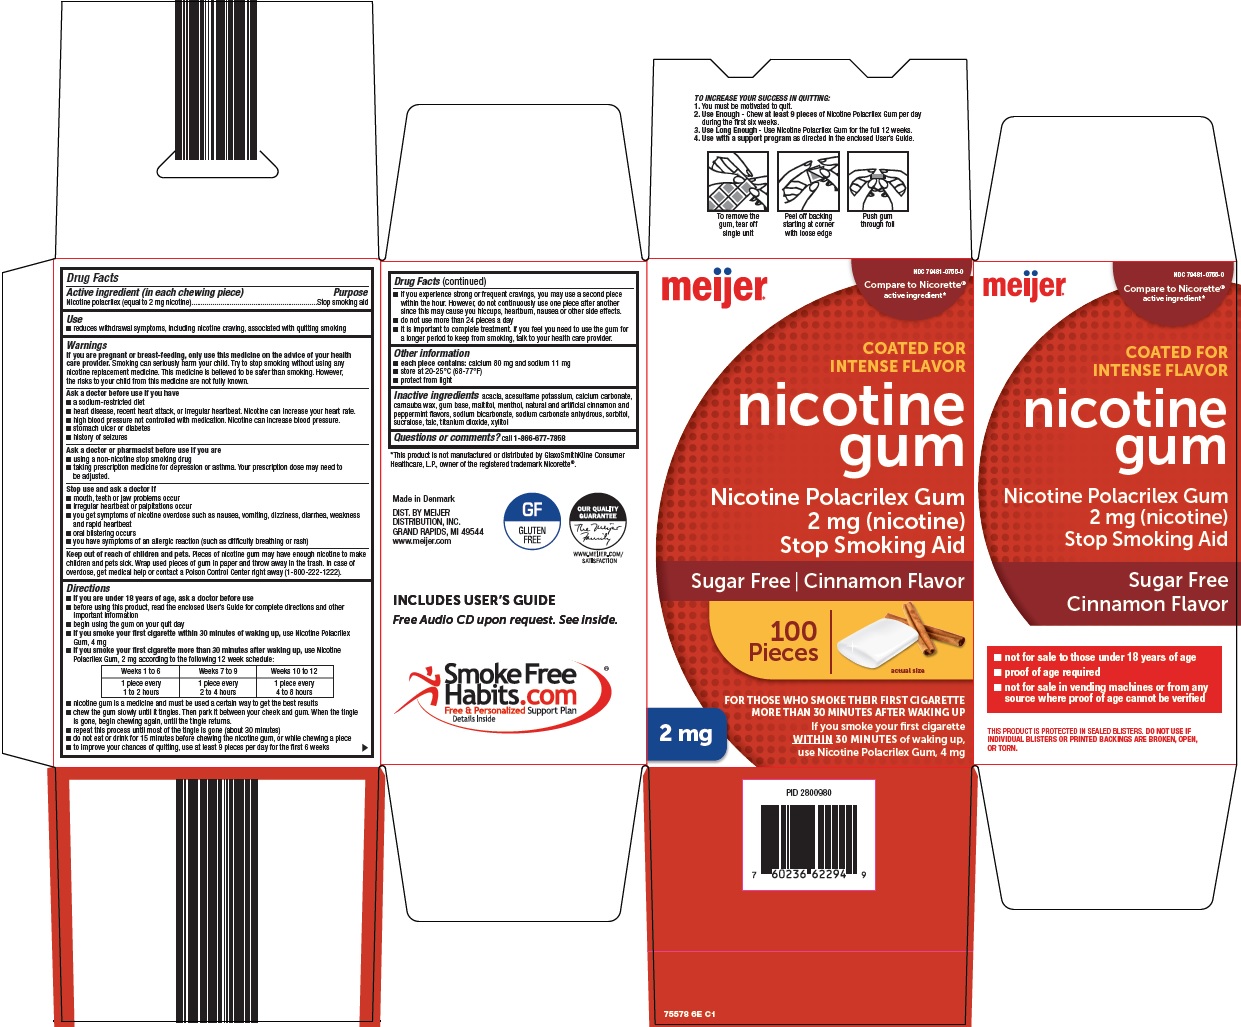 766-6e-nicotine-gum